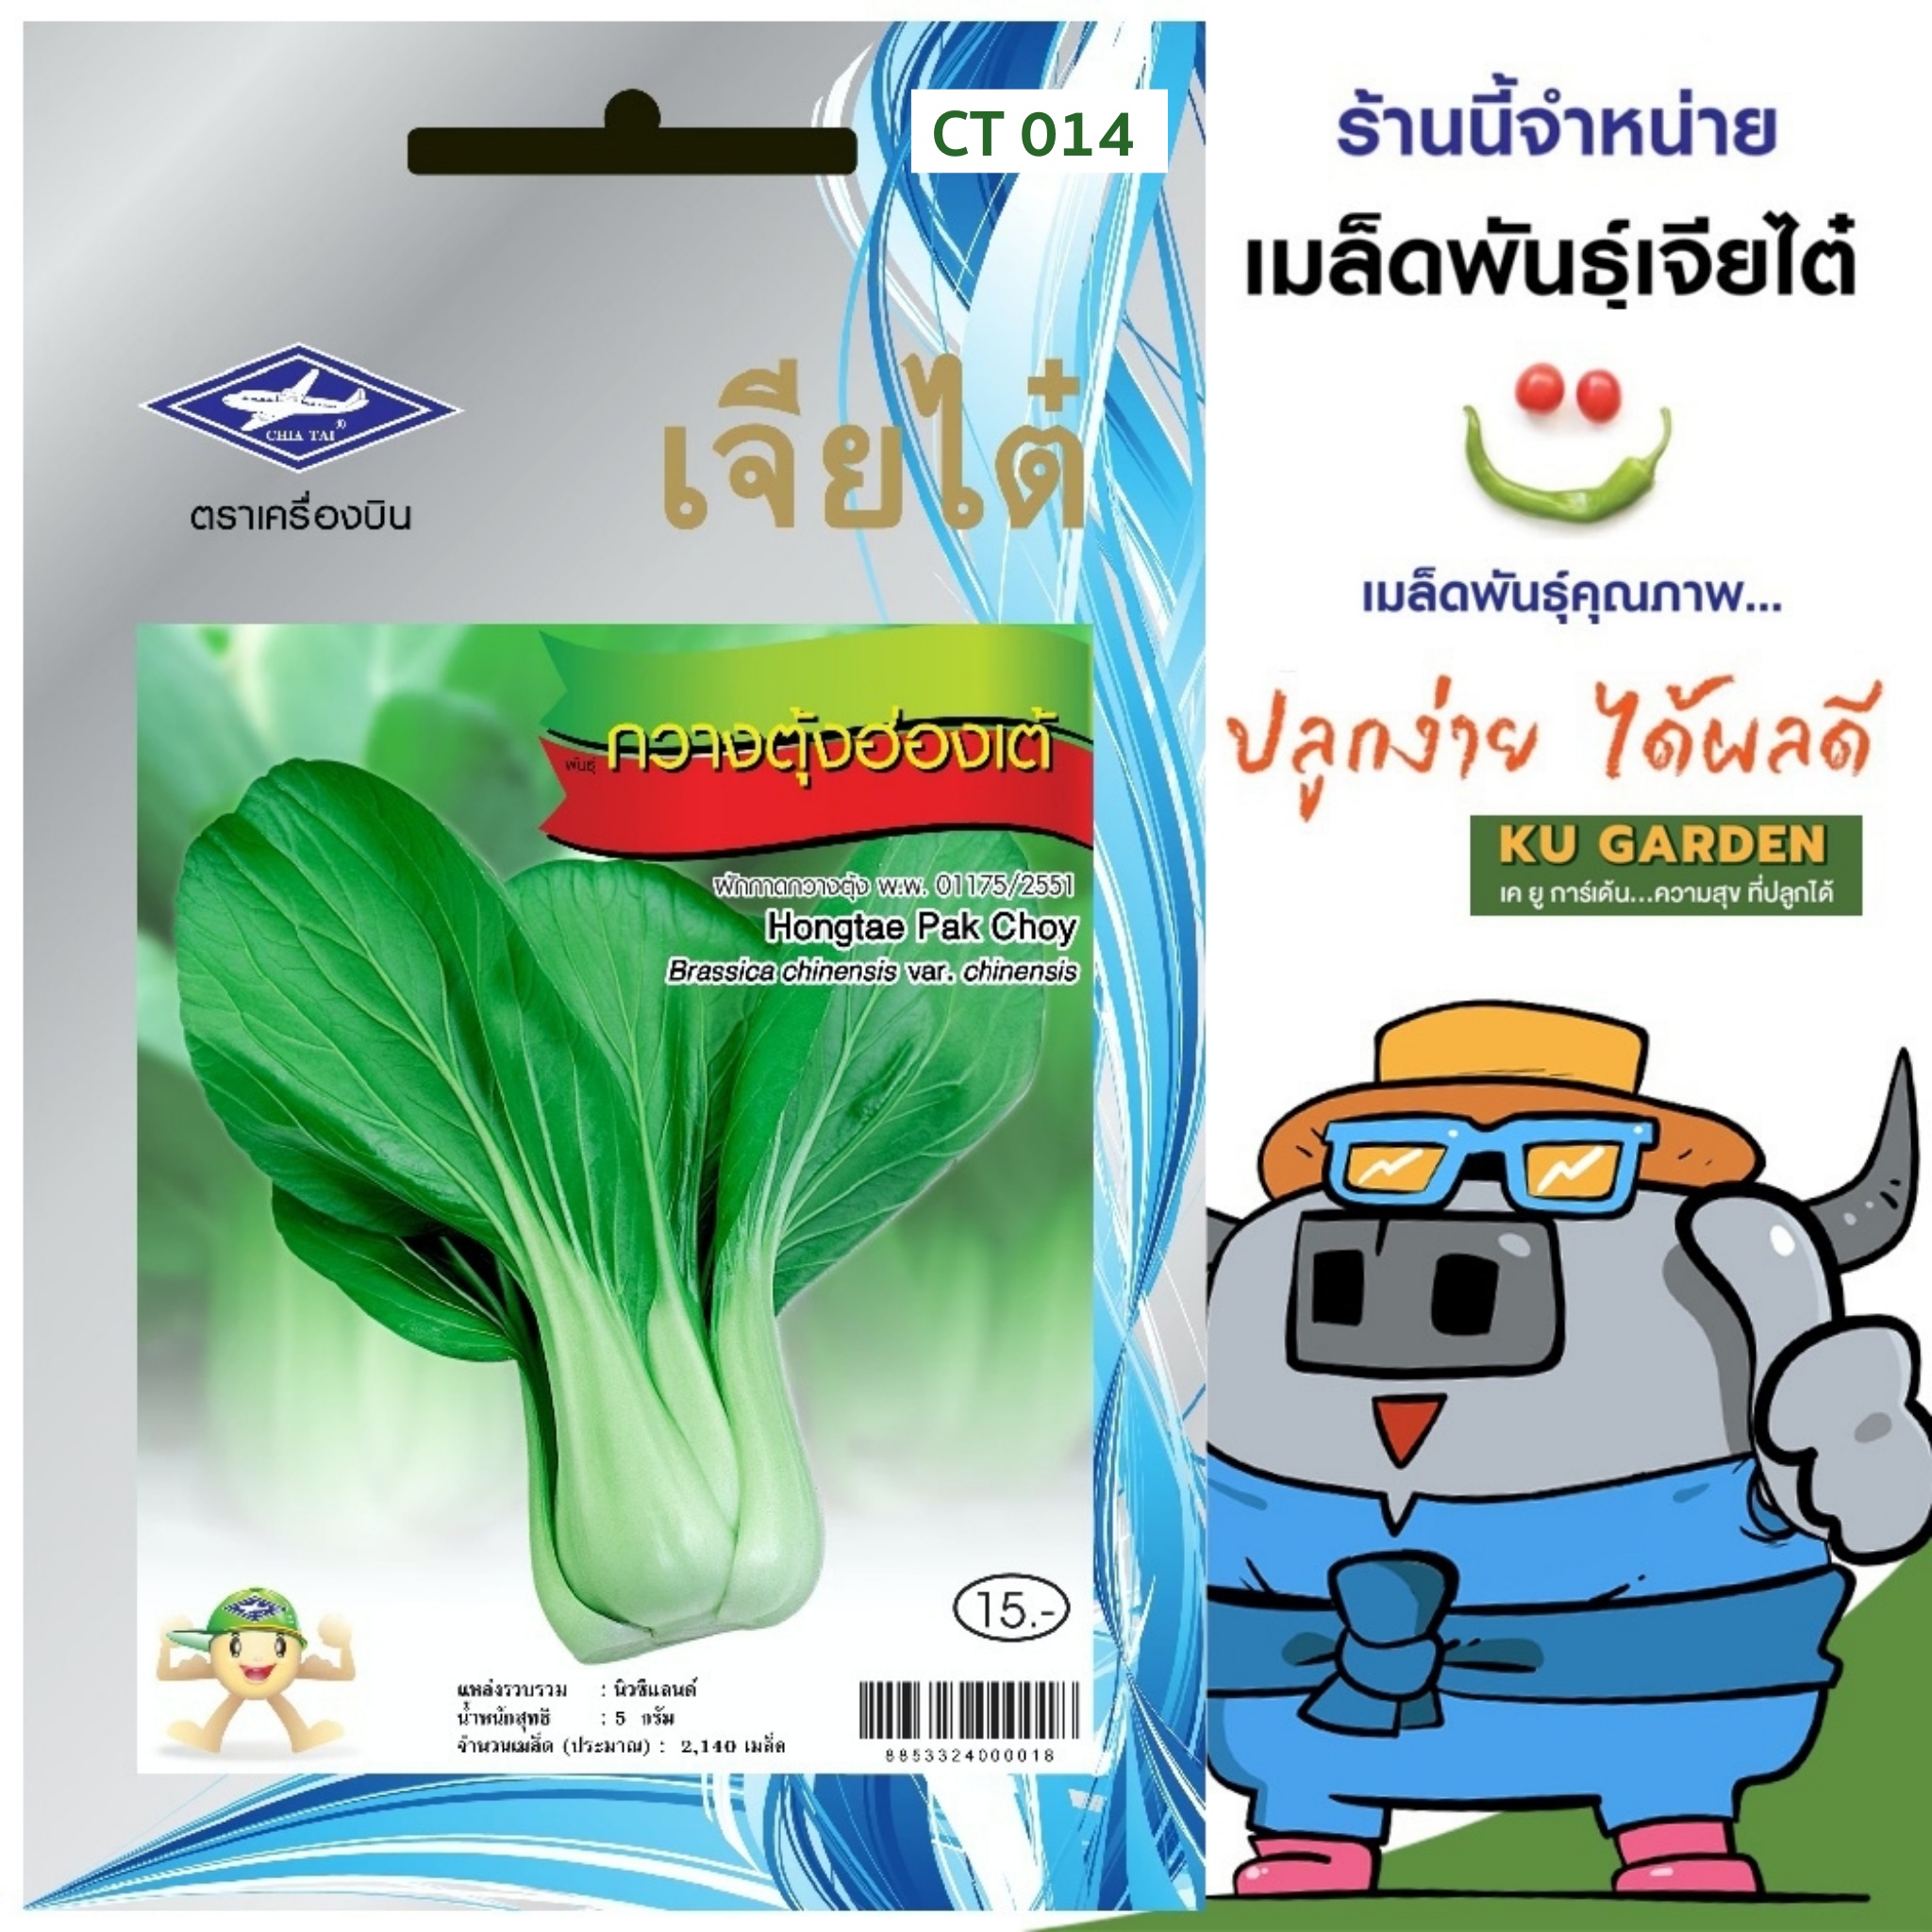 CHIATAI 🇹🇭 ผักซอง เจียไต๋ กวางตุ้งฮ่องเต้ O014 ประมาณ 2,140 เมล็ด กวางตุ้ง เมล็ดพันธุ์ผัก เมล็ดผัก เมล็ดพืช ผักสวนครัว